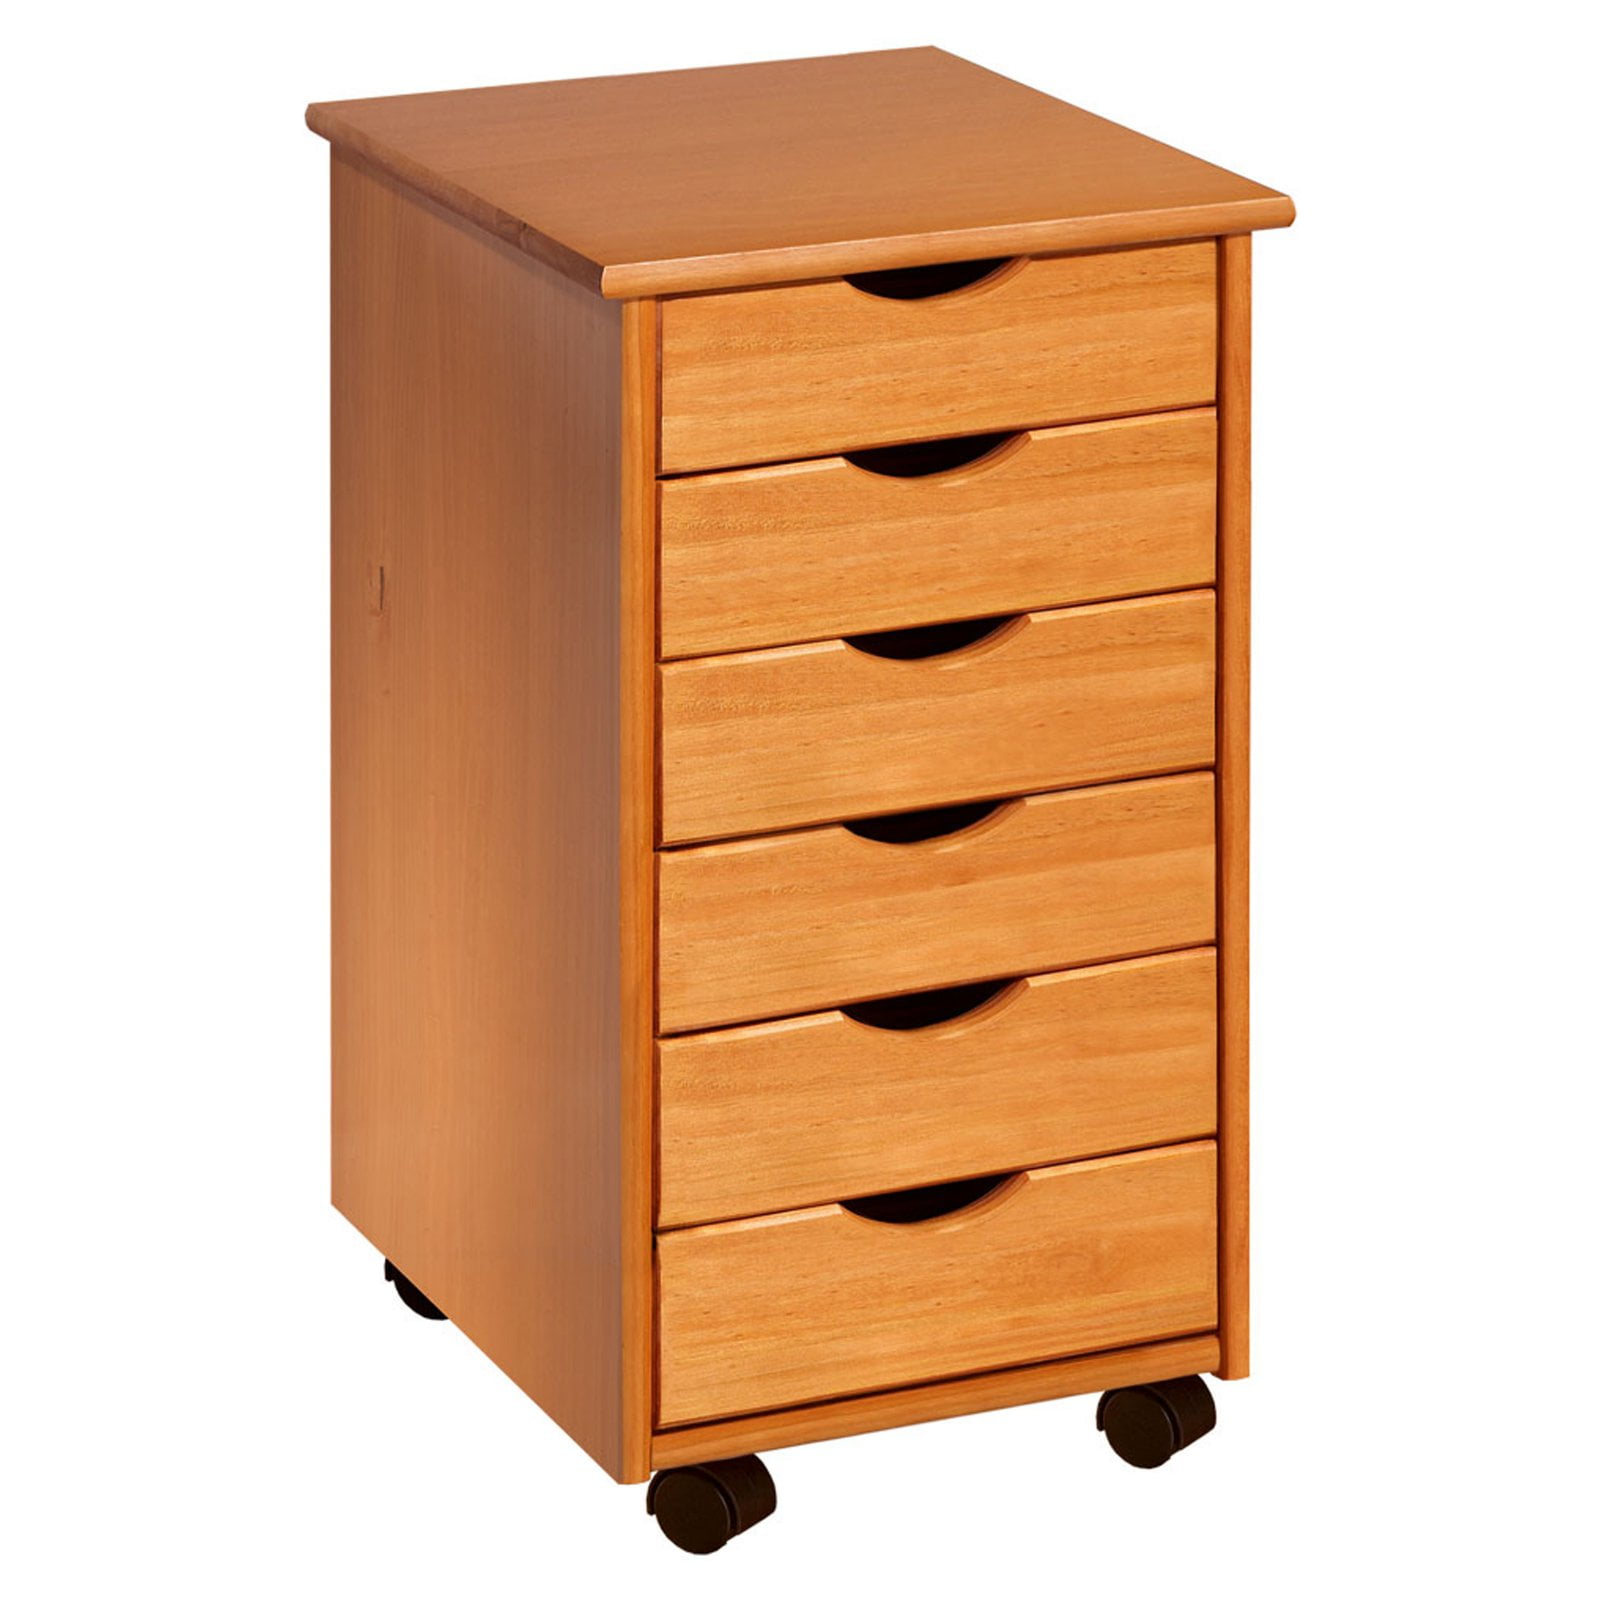 Bianca 9 Drawer Chest, Wood Storage Dresser Cabinet with Wheels